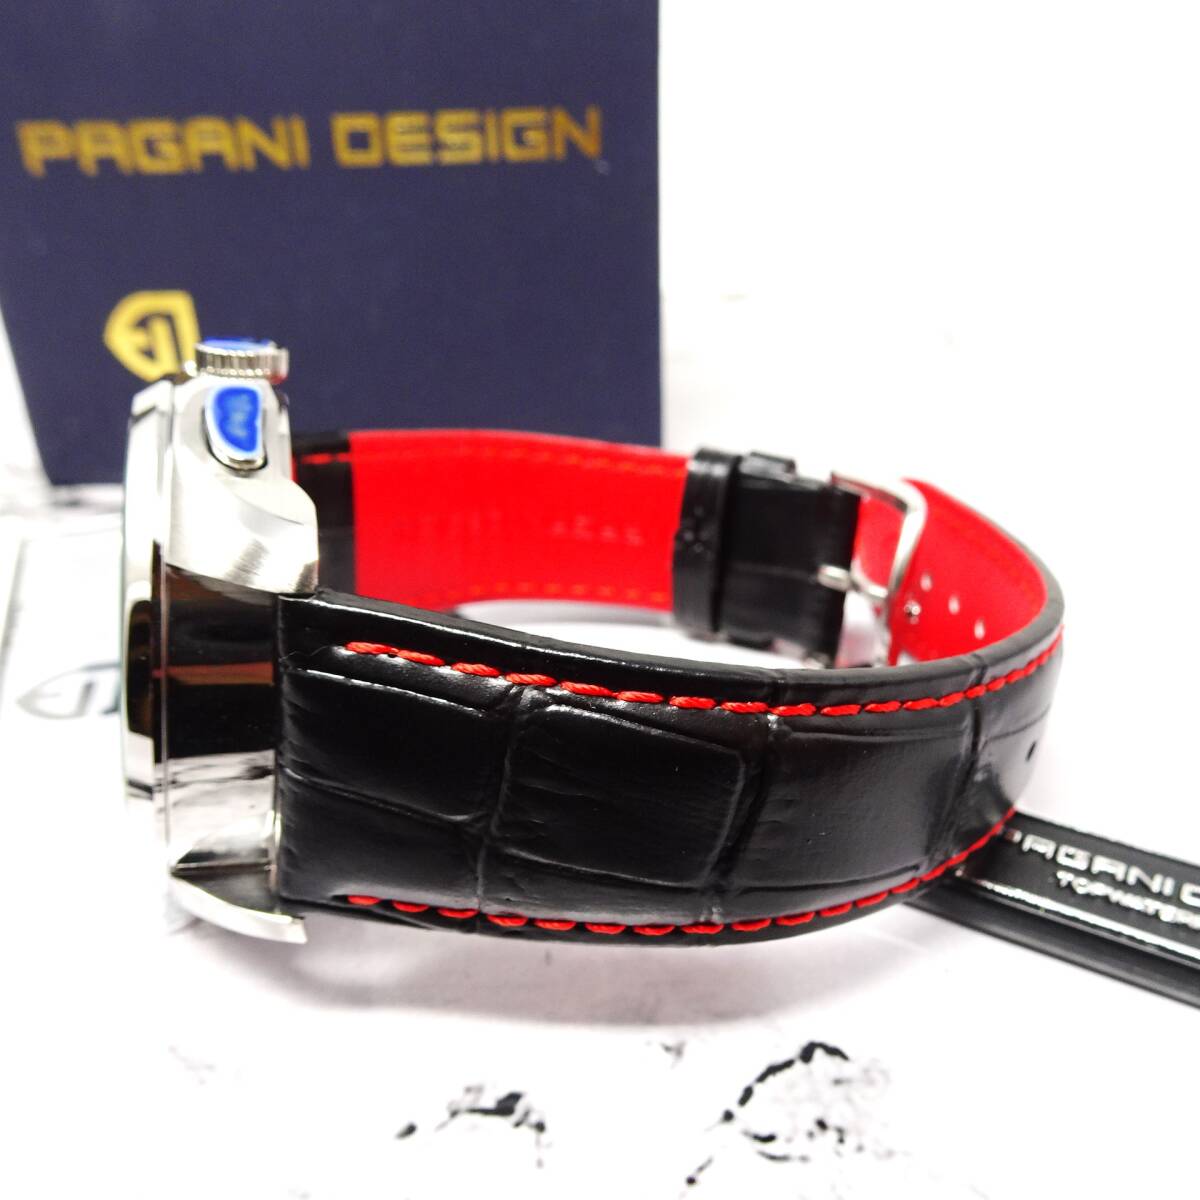 送料無料・新品・パガーニデザイン・メンズ・クロノグラフクオーツ式腕時計・クロコ型押し本革レザー・オマージュウオッチ・PD-3306 BK_画像9